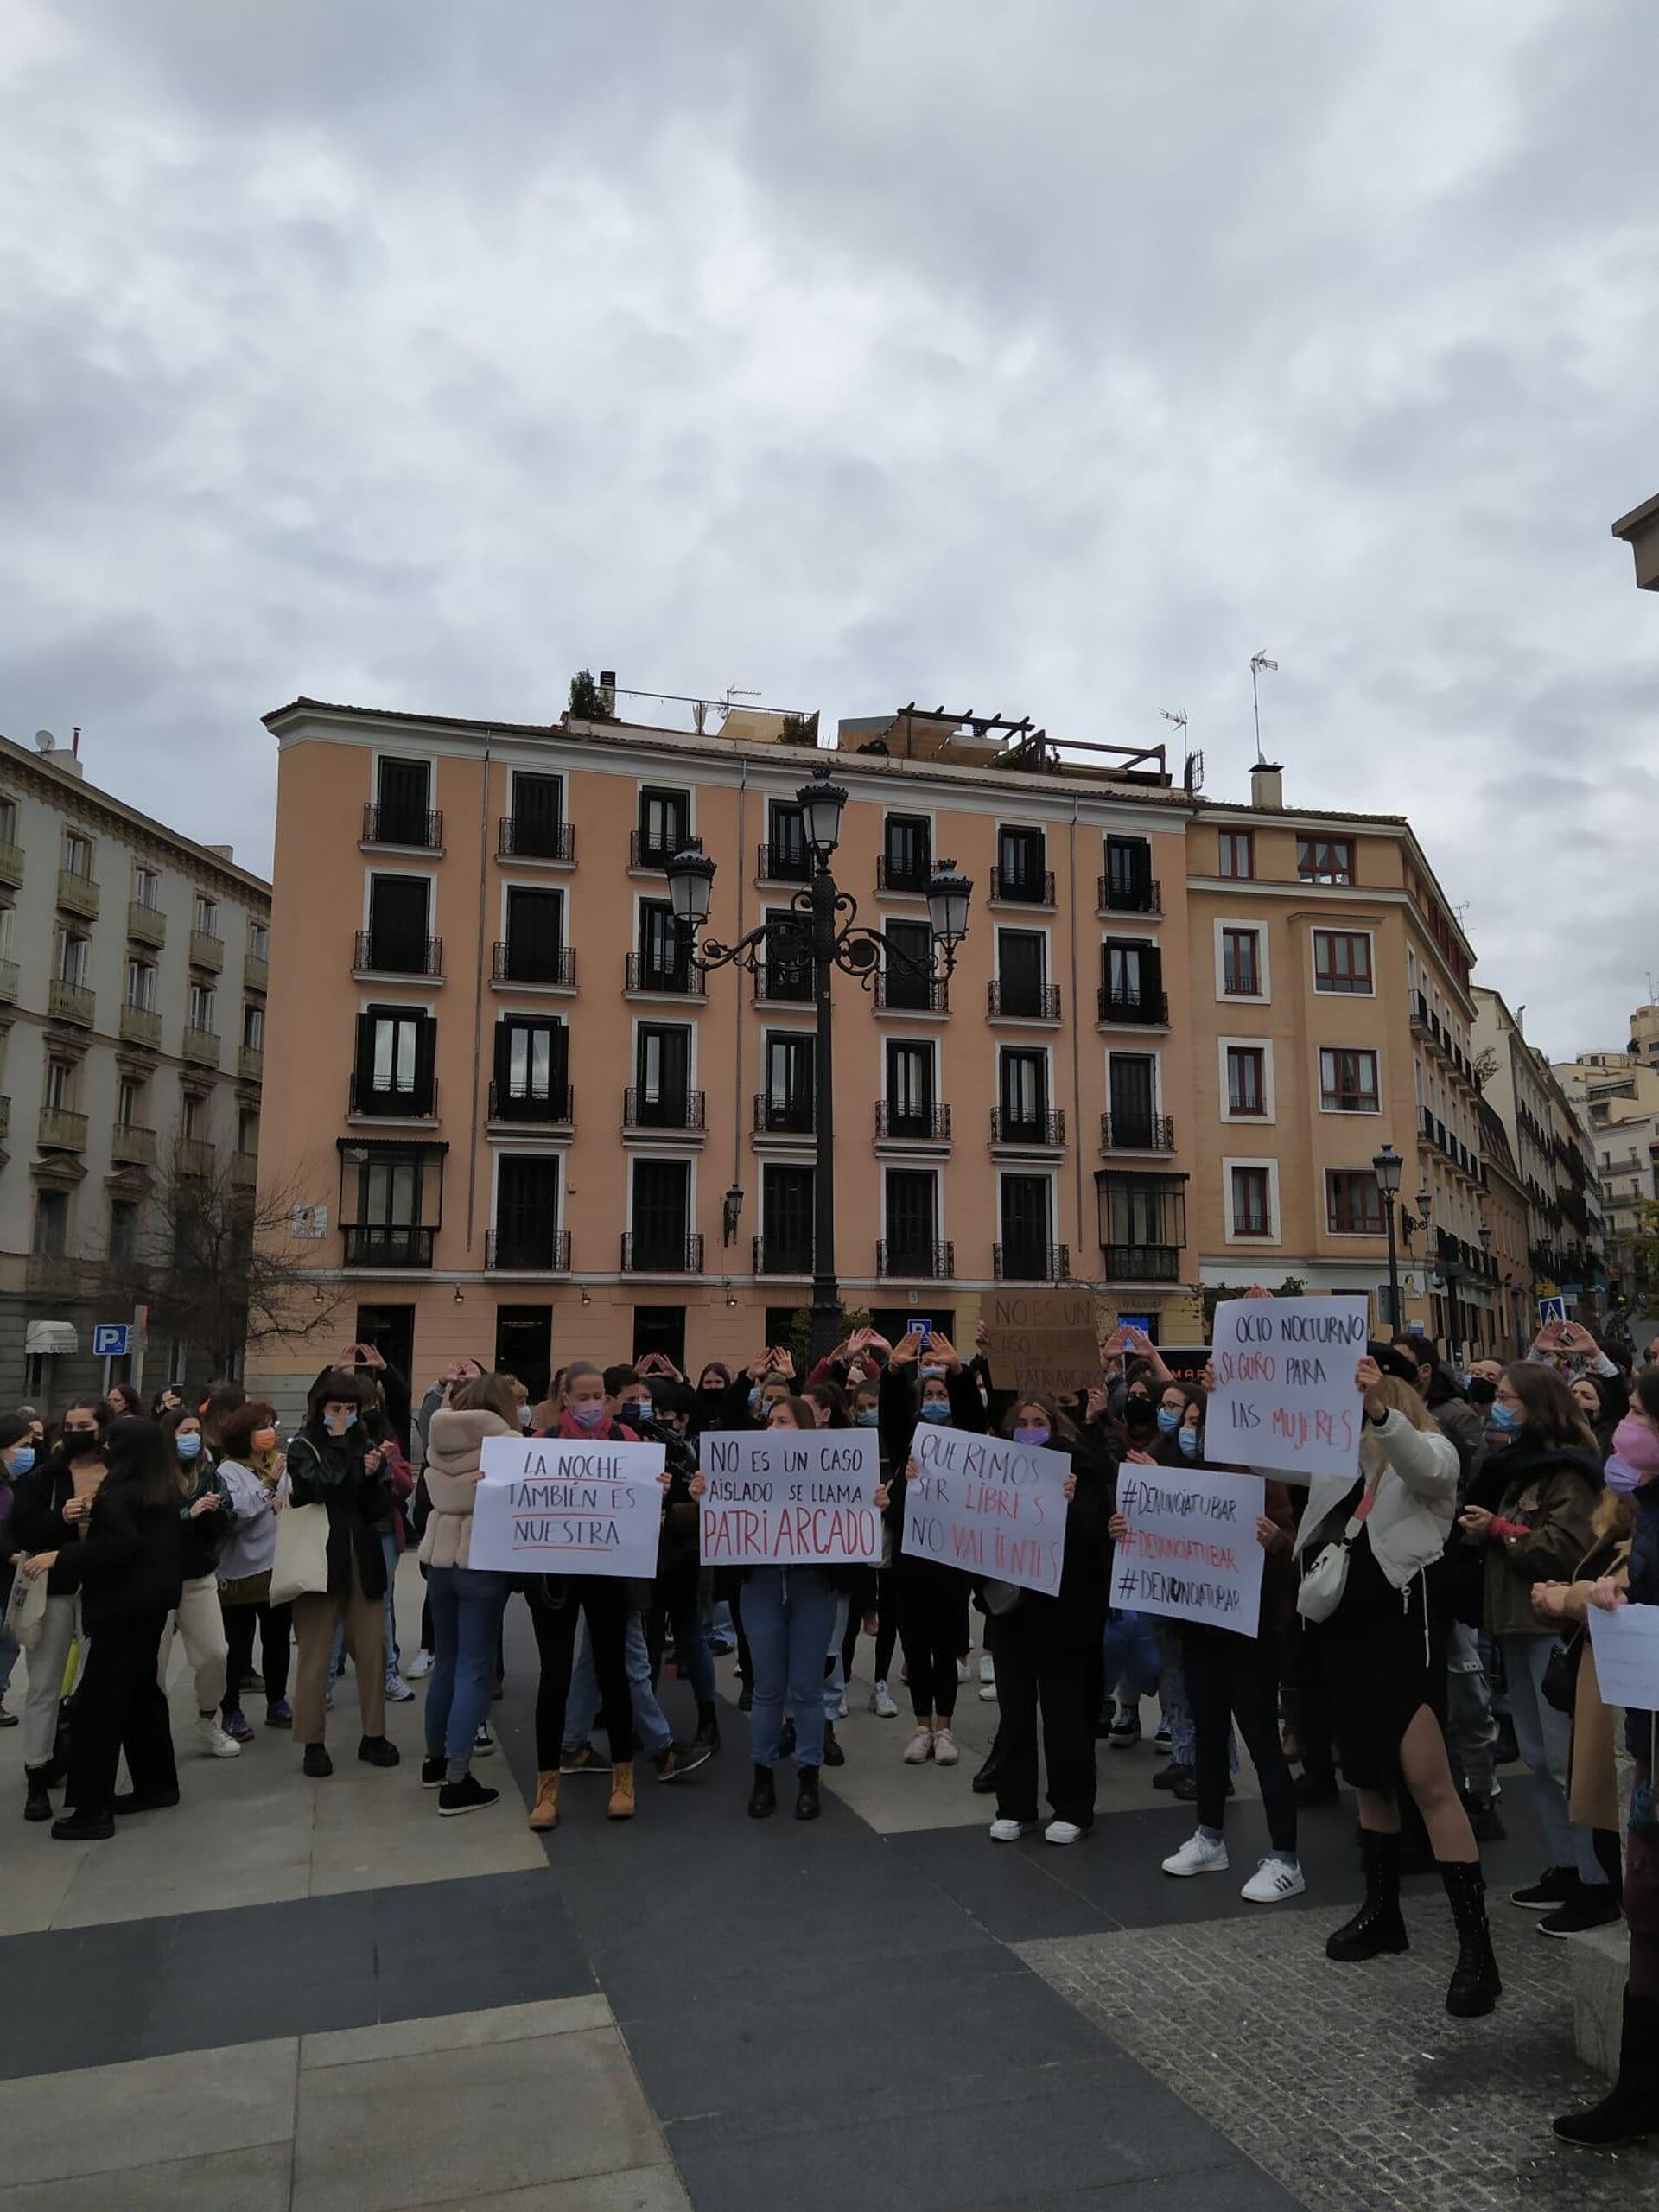 Protesta en Madrid contra las violaciones mediante la sumisión química - Sputnik Mundo, 1920, 24.11.2021